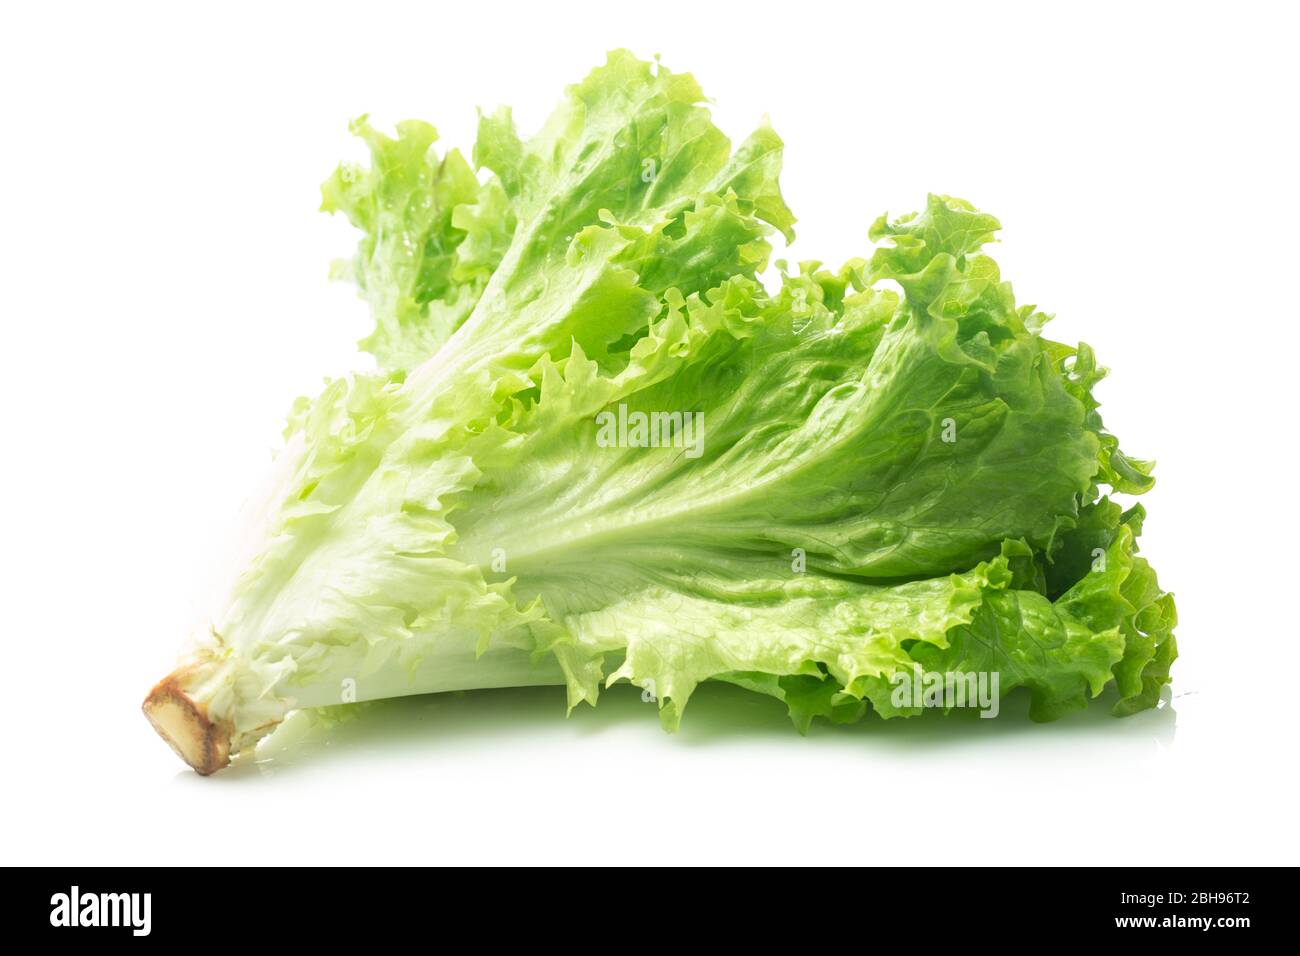 Salad leaf. Lettuce isolated on white background. Stock Photo